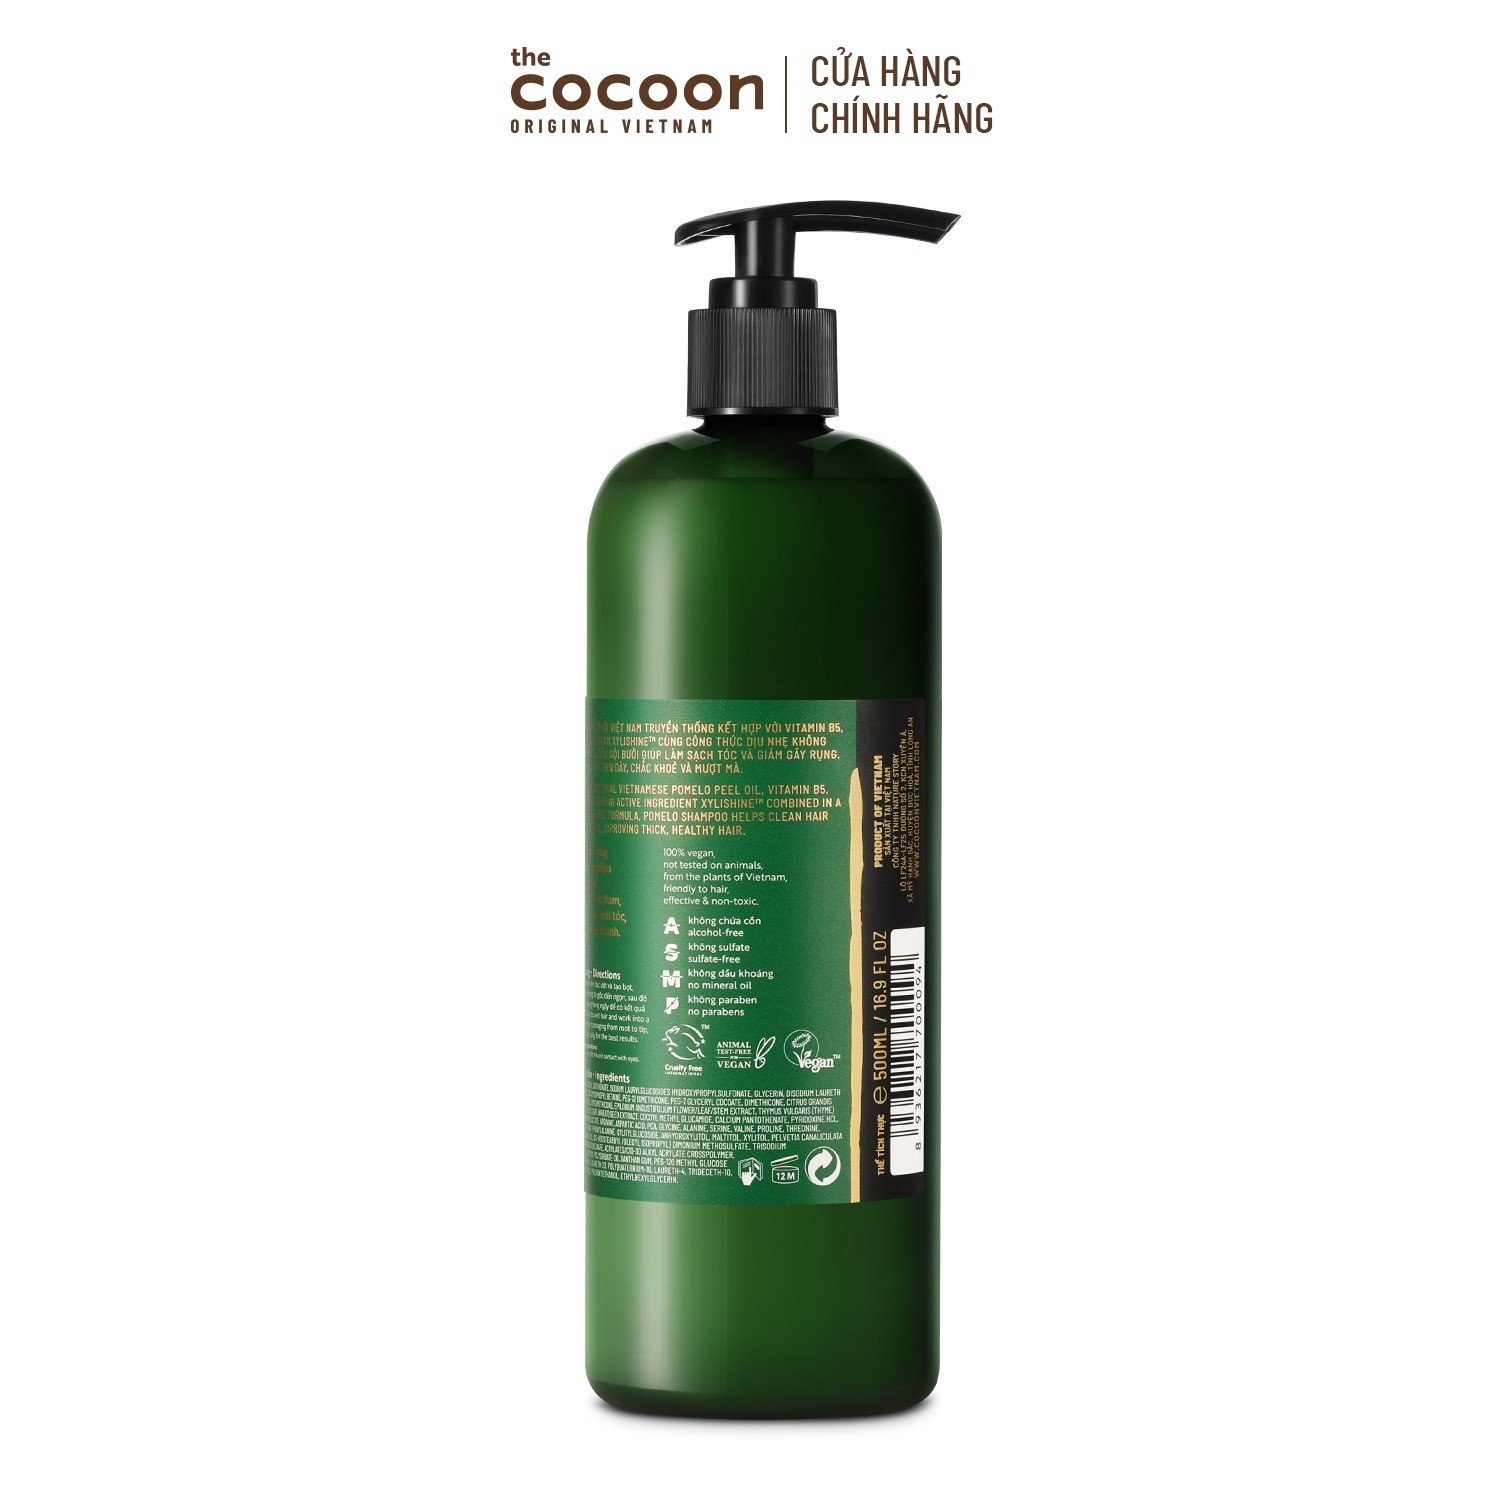 Bigsize - Dầu gội bưởi Cocoon giúp giảm gãy rụng và làm mềm tóc 500ml